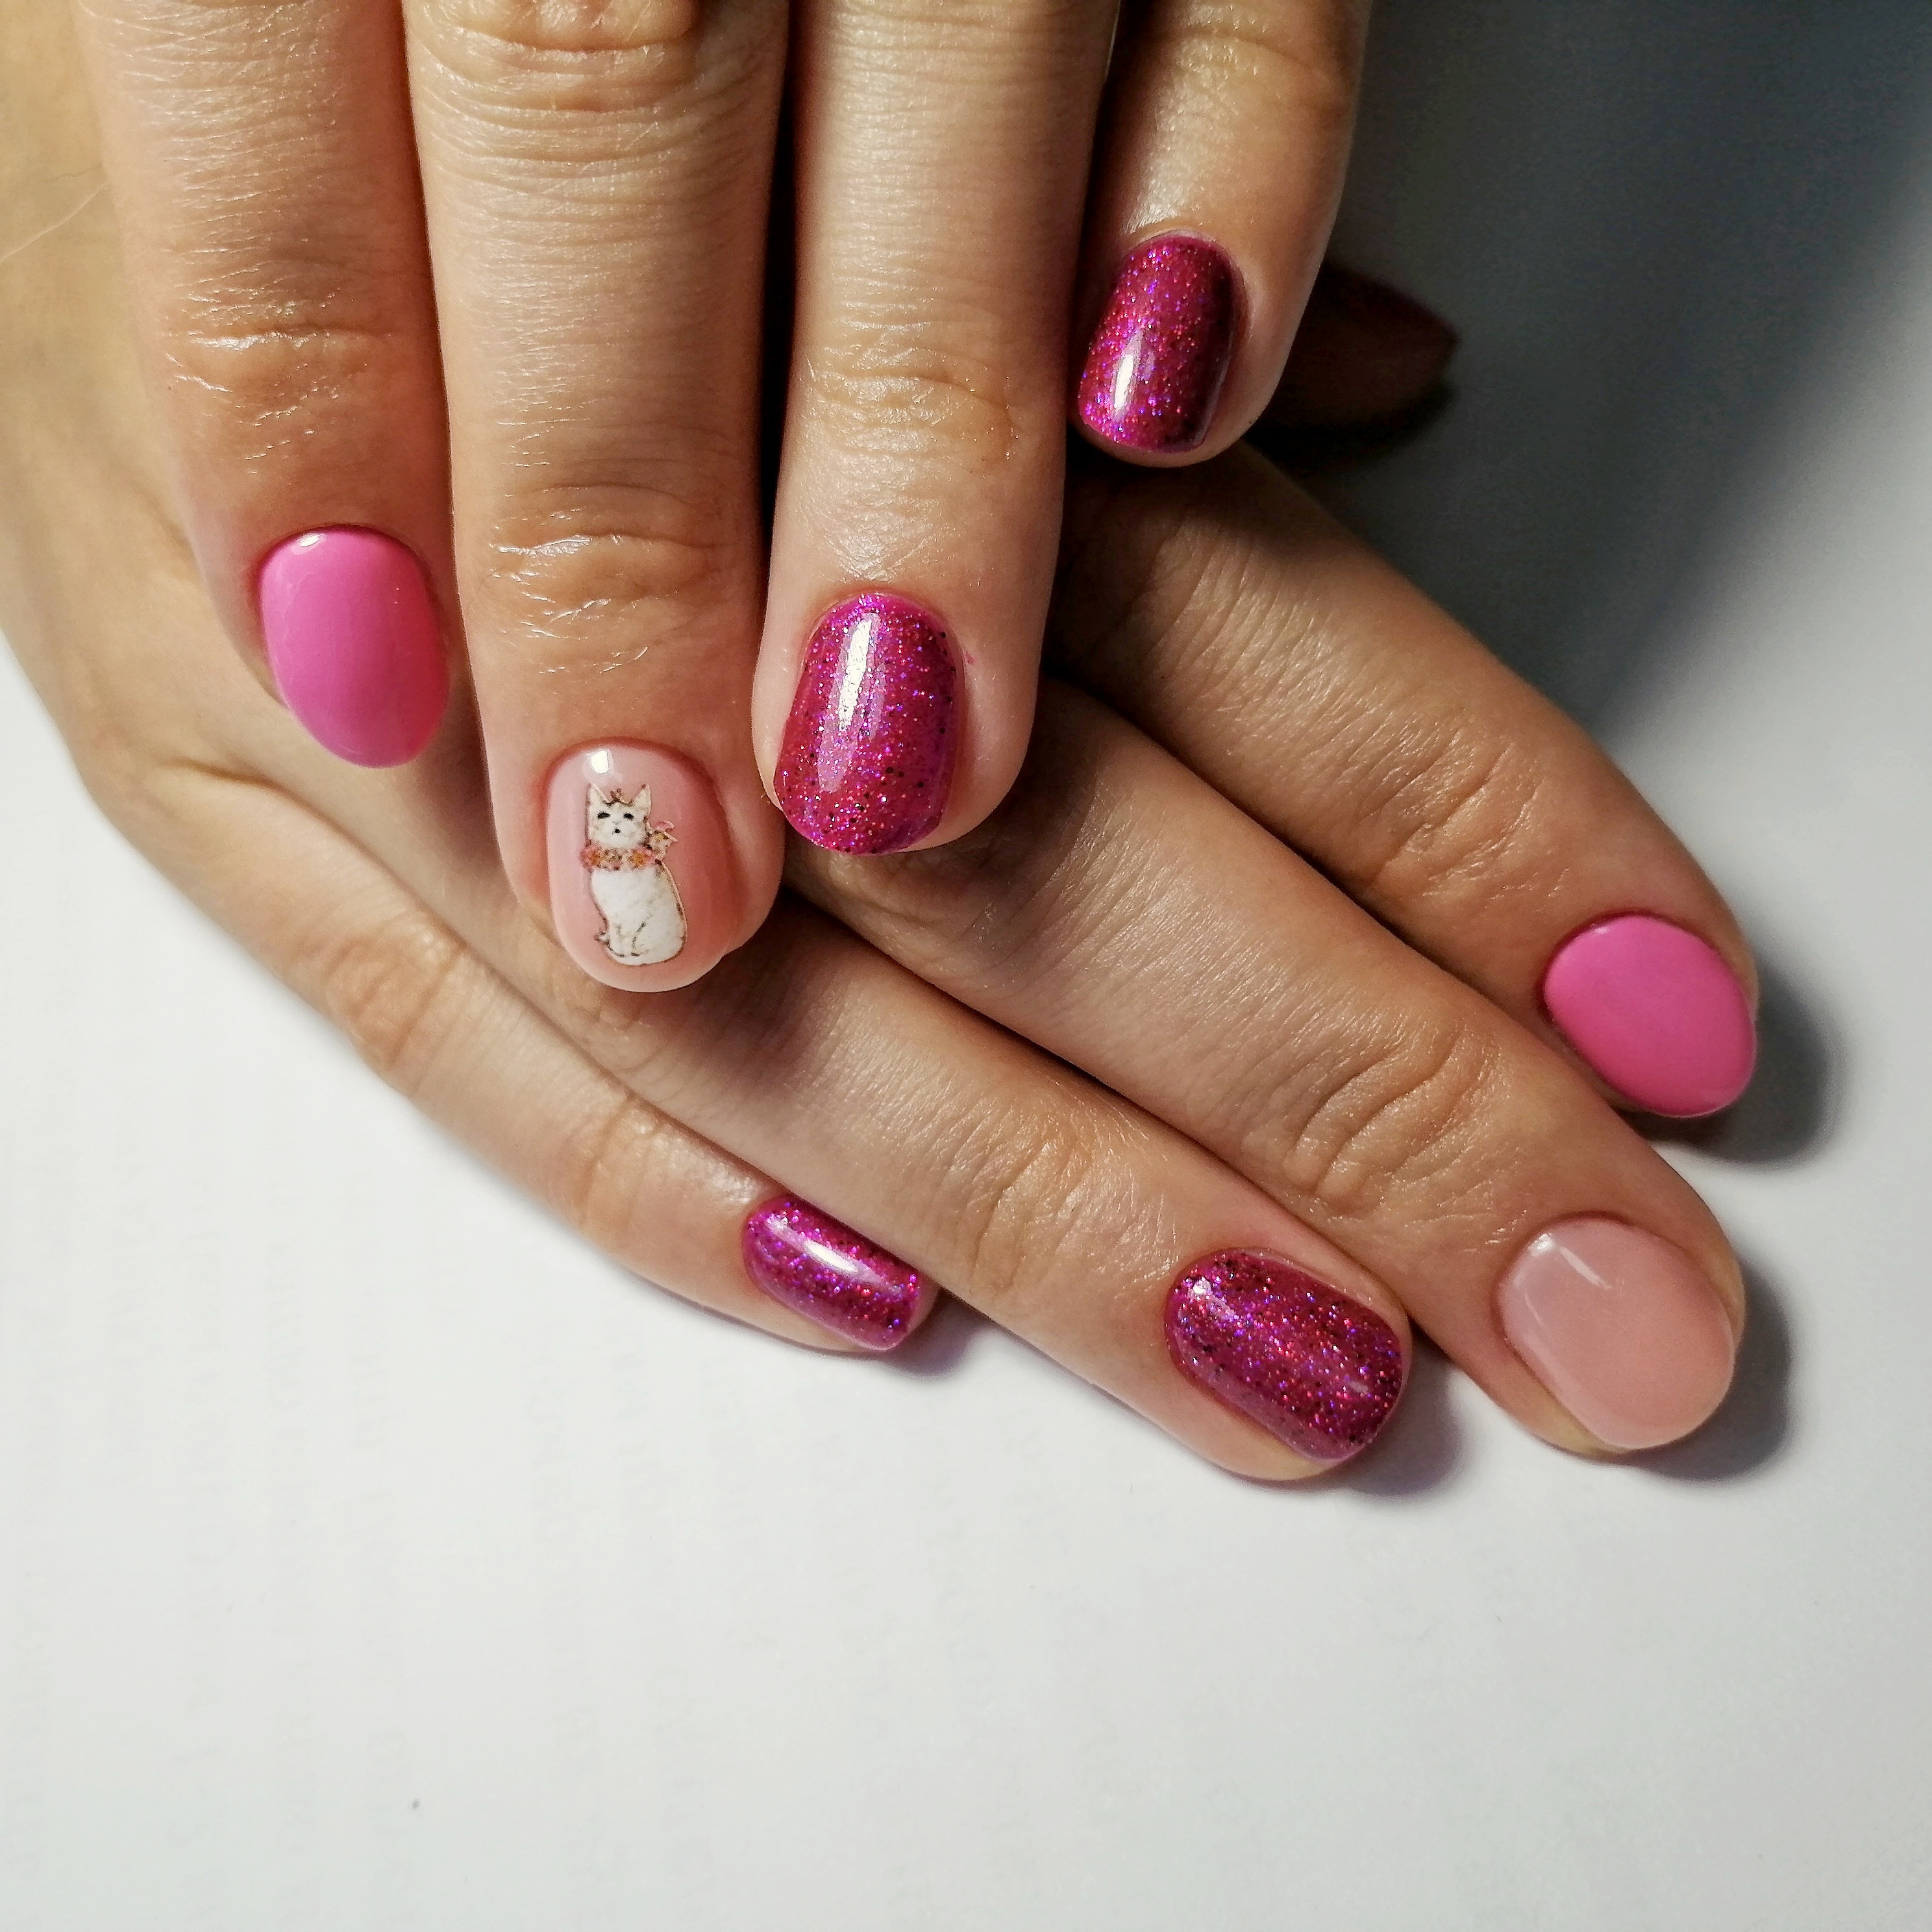 Маникюр с кошкой и блестками в розовом цвете на короткие ногти.